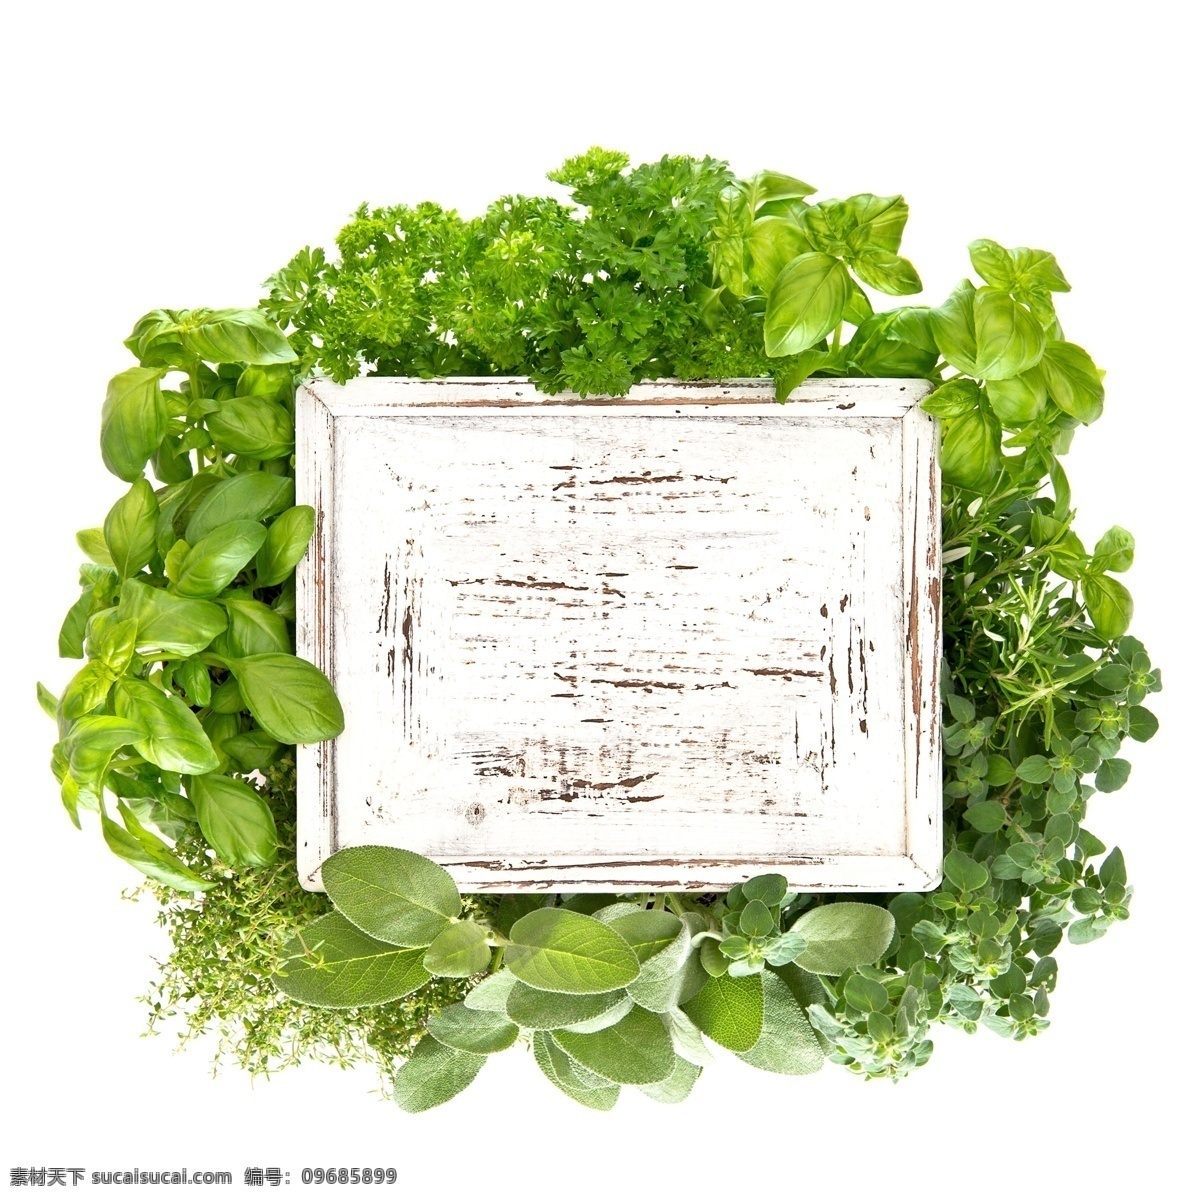 绿叶 围绕 白色 木板 空白 蔬菜图片 餐饮美食